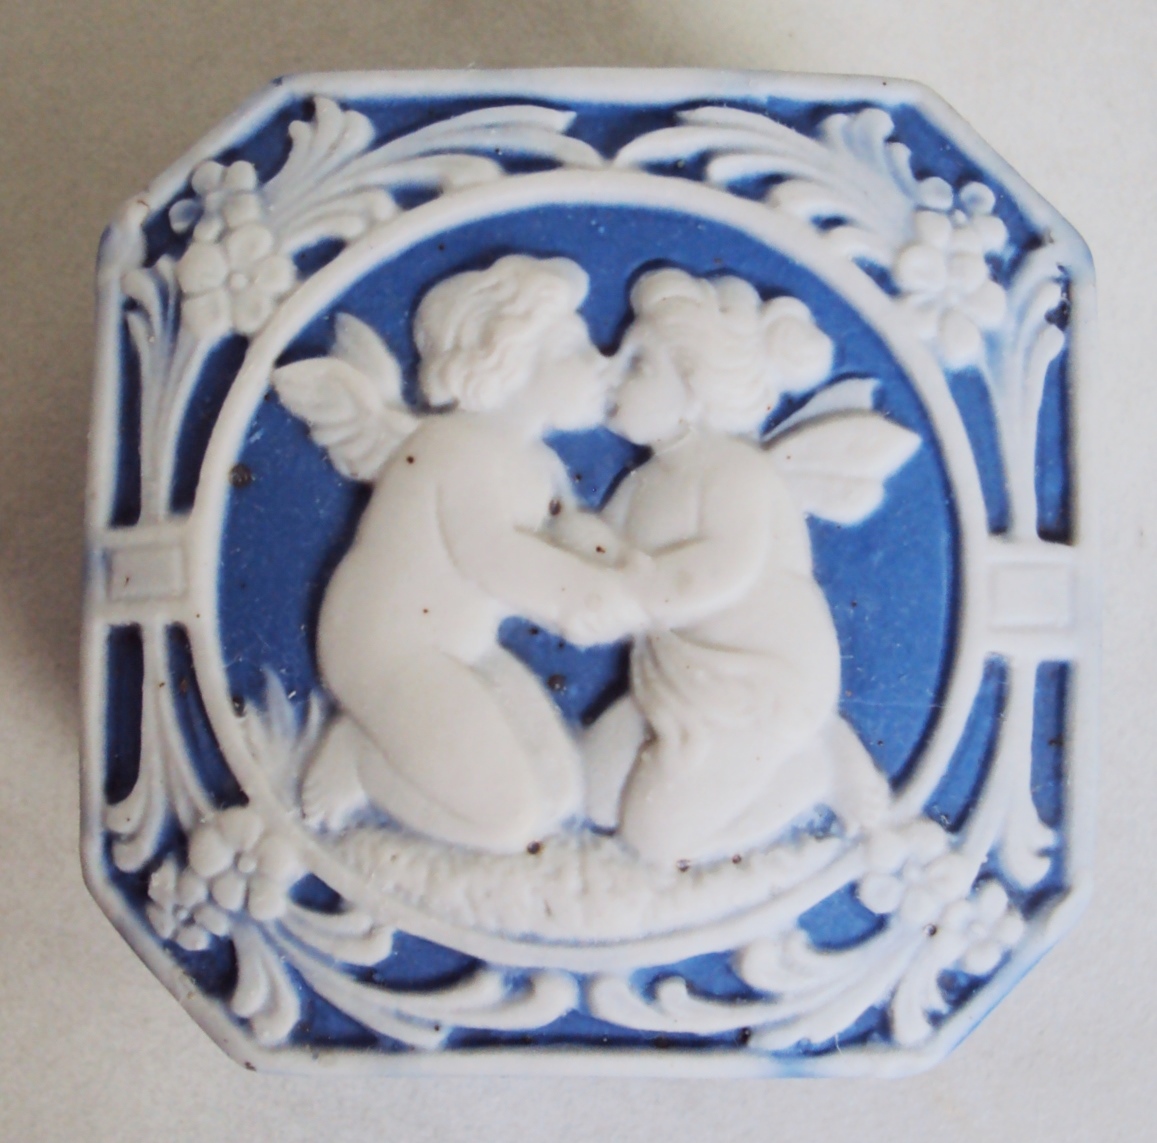 LO 419 – Caixa antiga inglesa em porcelana Wedgwood azul com anjos e flores em relevo